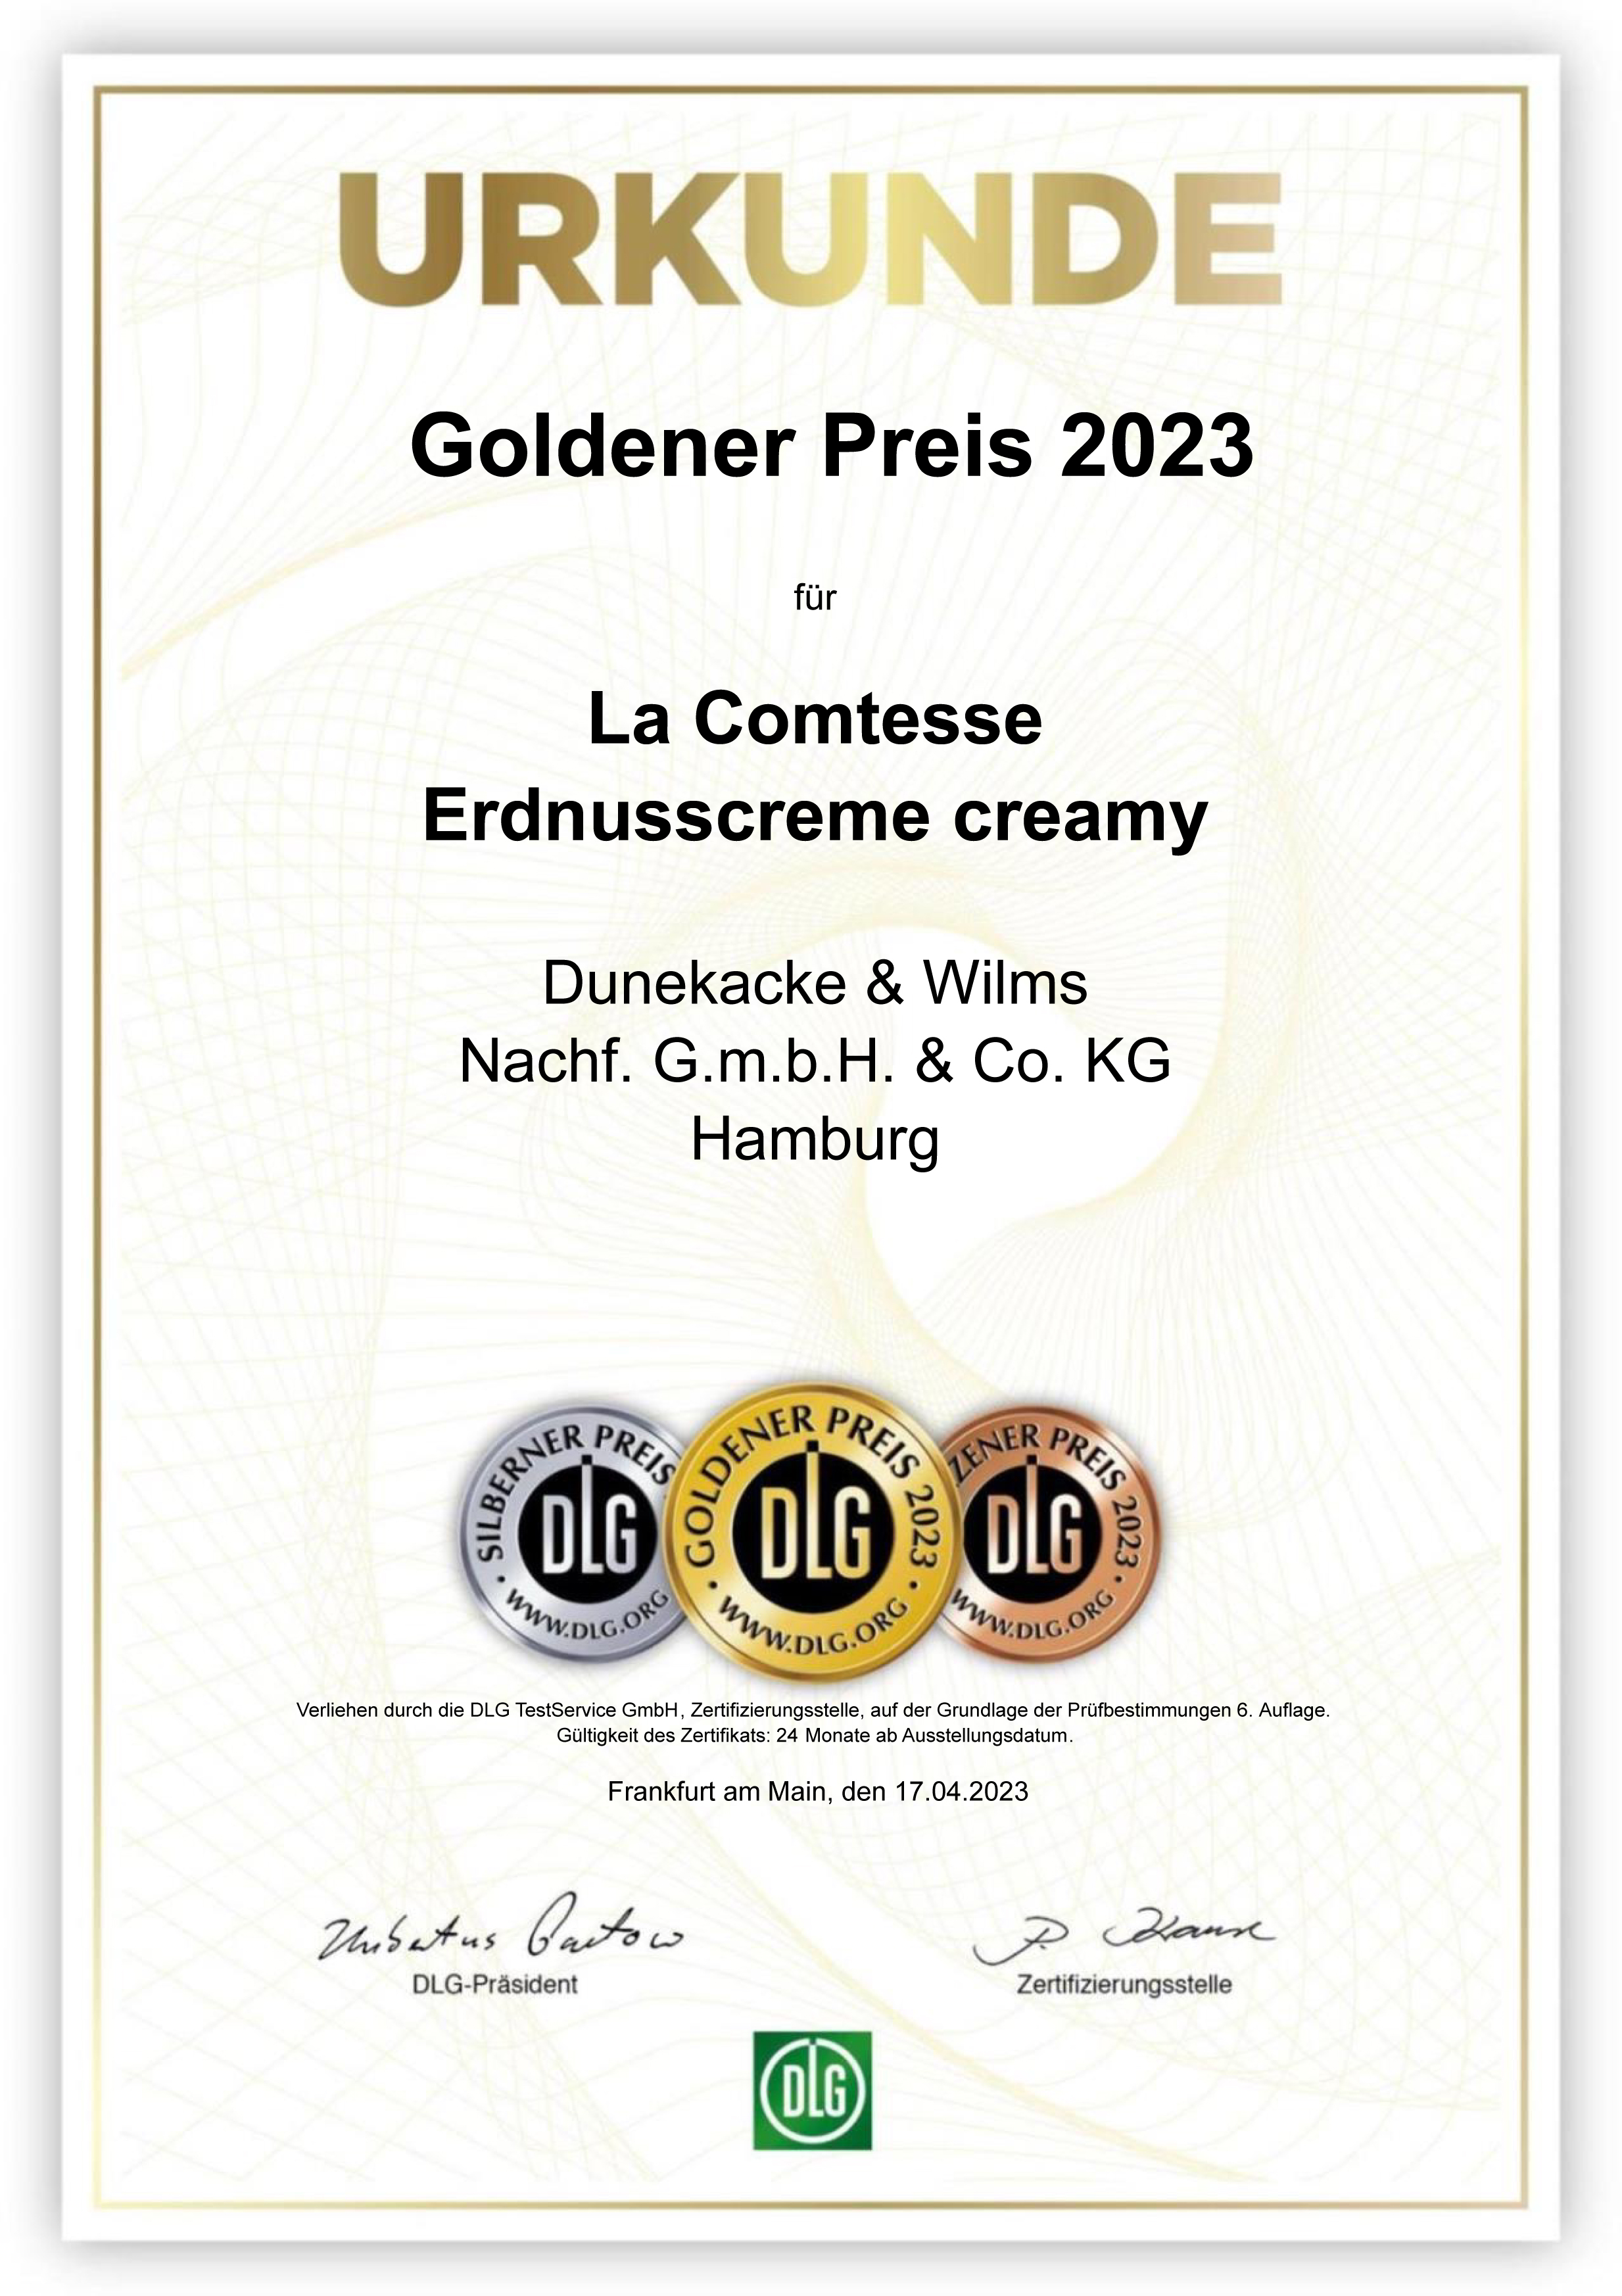 DLG GOLD Prämierung Erdnusscreme creamy Marke LA COMTESSE 2023